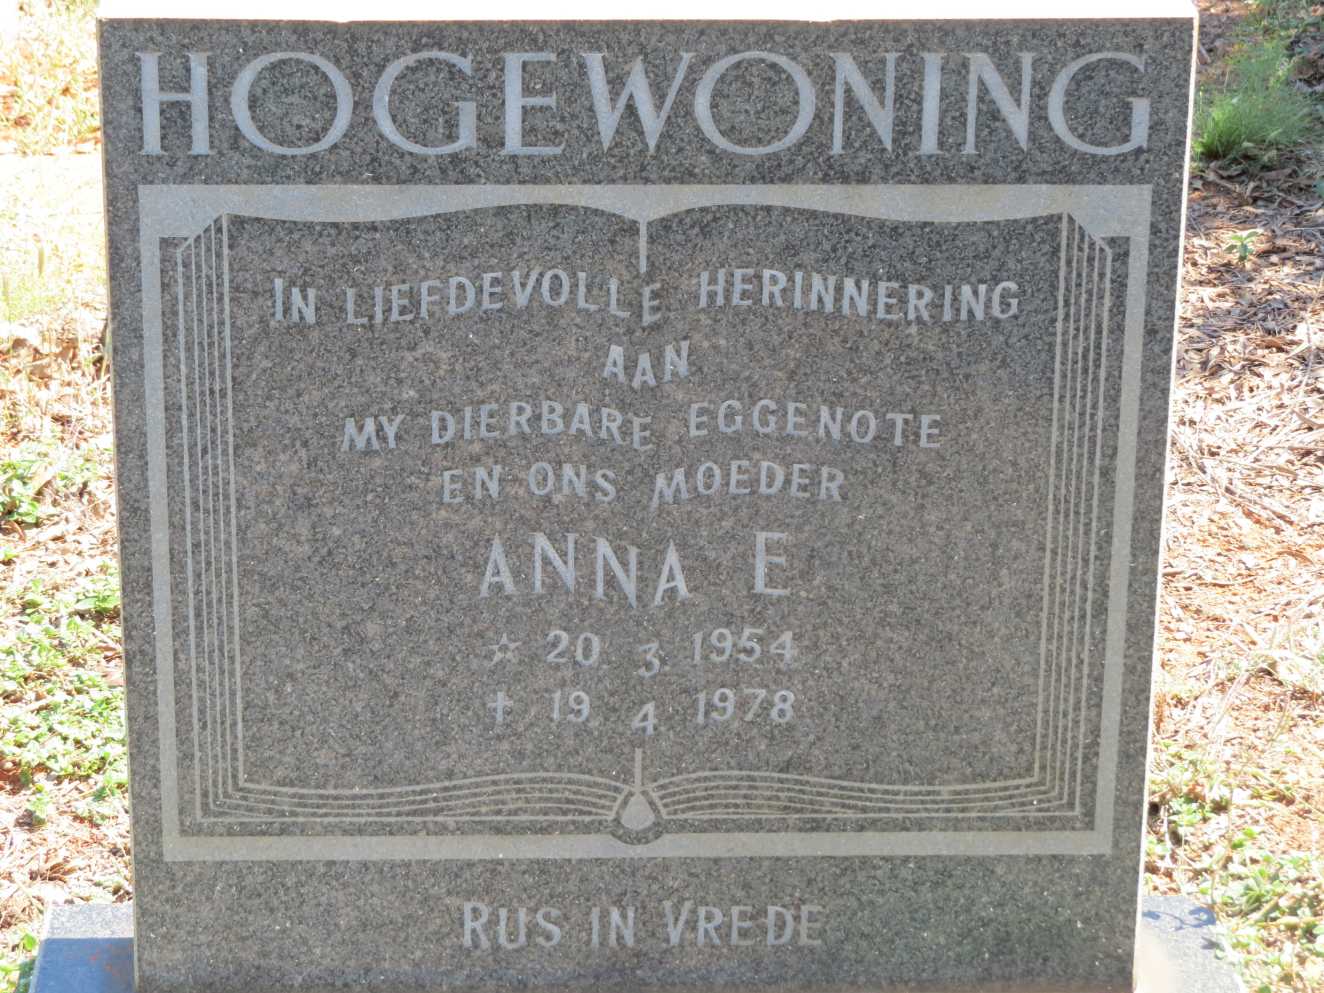 HOGEWONING Anna E. 1954-1978